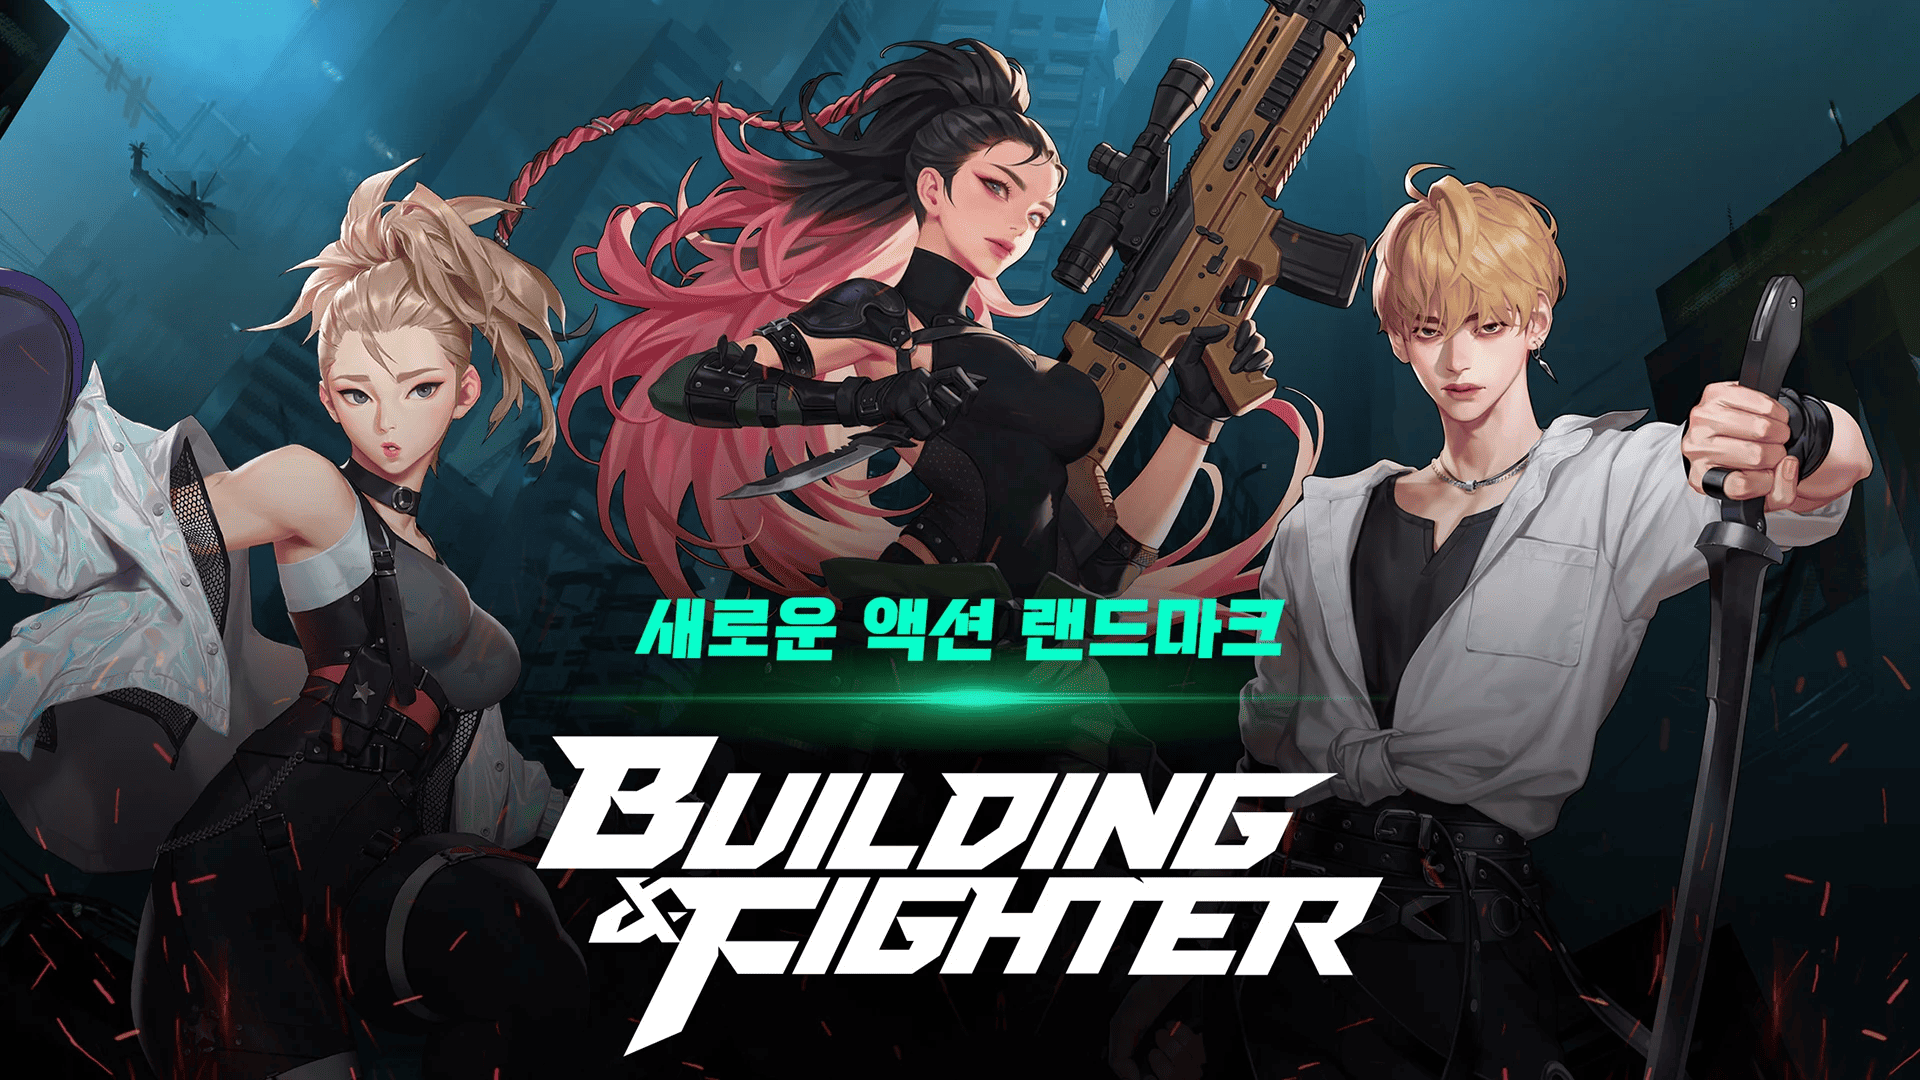 定位技术动作RPG《Building＆Fighter》将在推出六个月后结束营运《빌딩앤파이터》 - 巴哈姆特